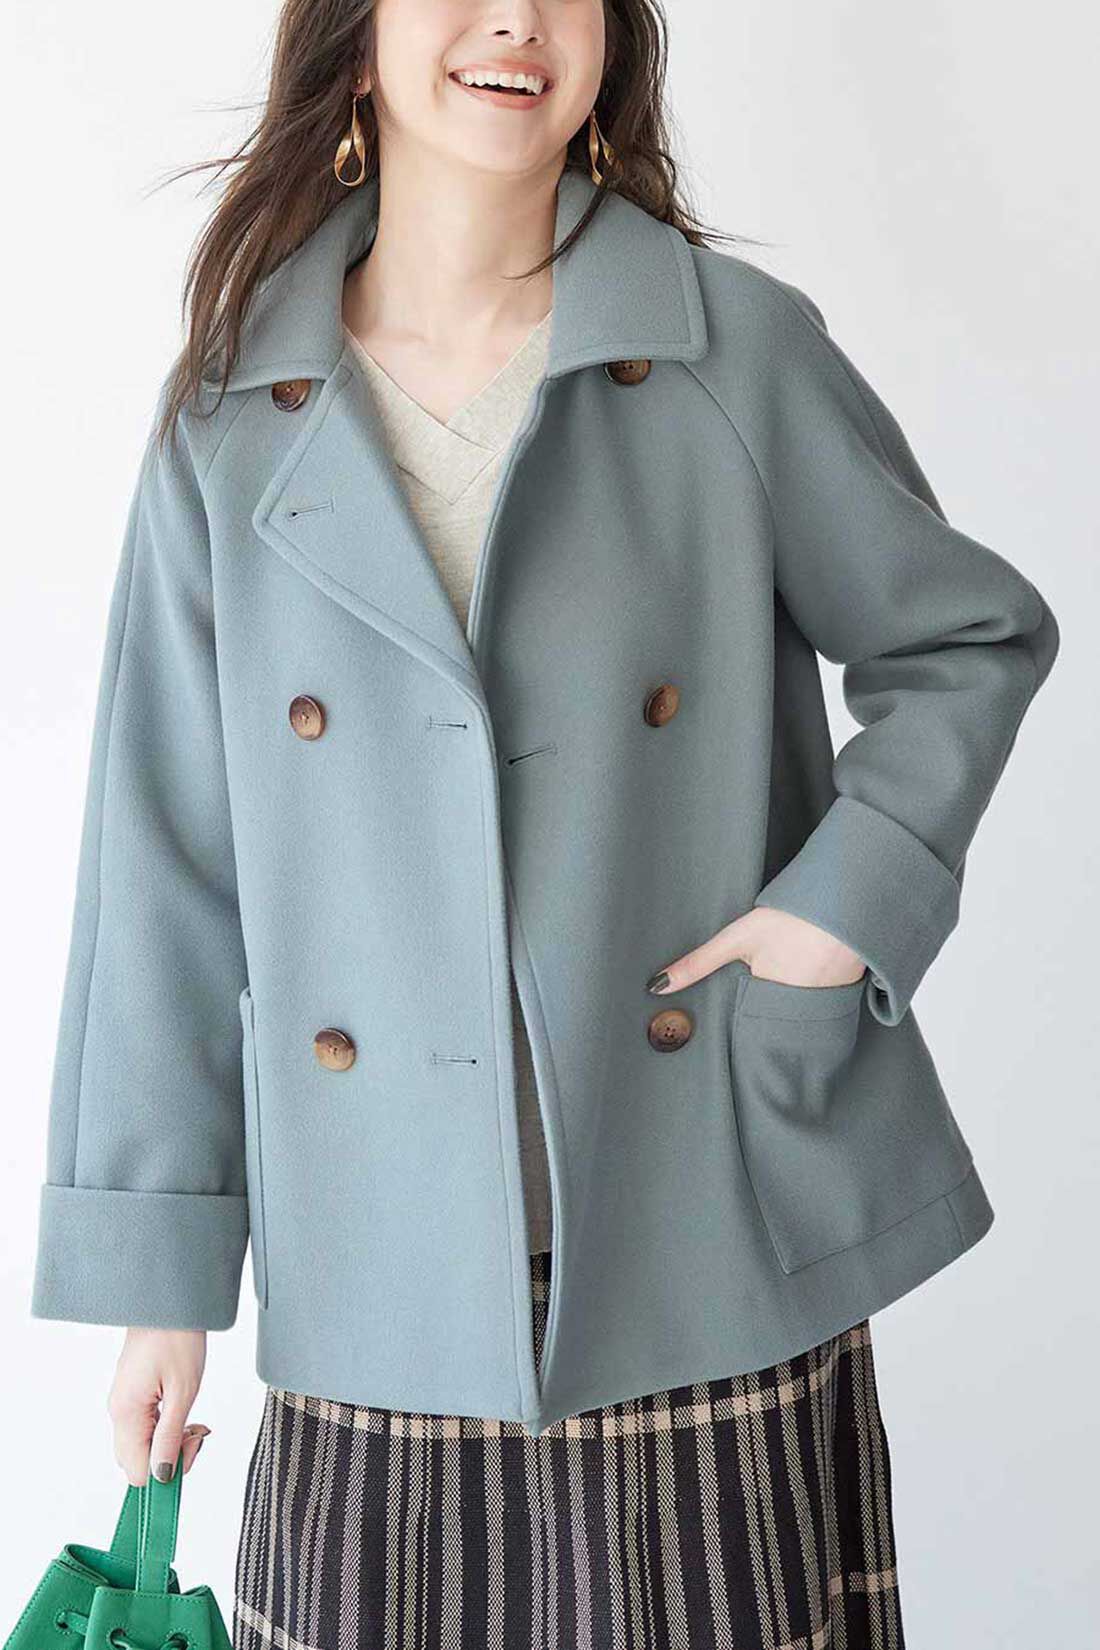 IEDIT|IEDIT[イディット]　着映えカラーのショート丈こなれPコート〈ブルーグリーン〉|※着用イメージです。お届けするカラーとは異なります。